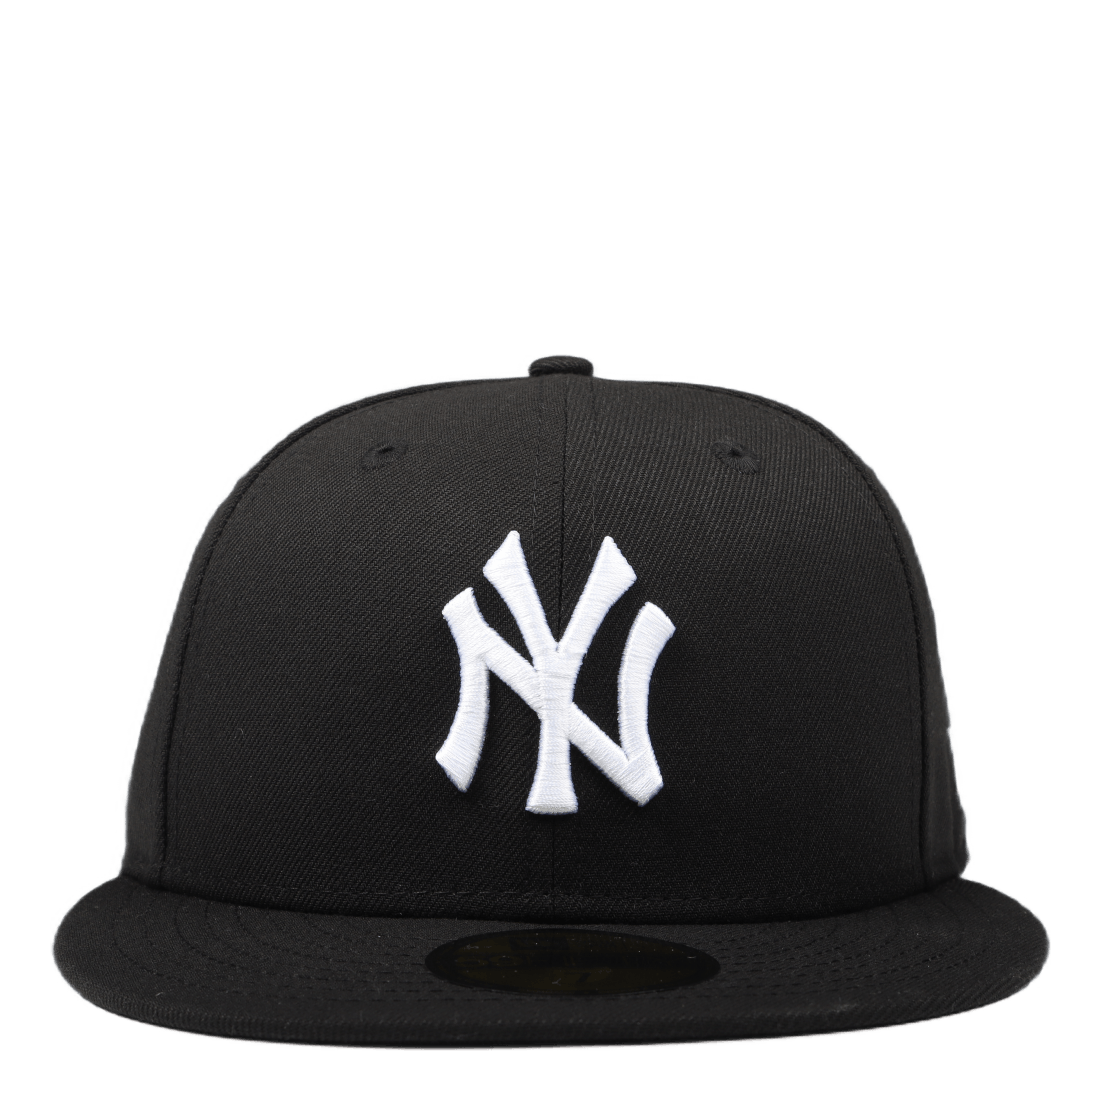 Mlb Basic Yankees 5950 Black Black